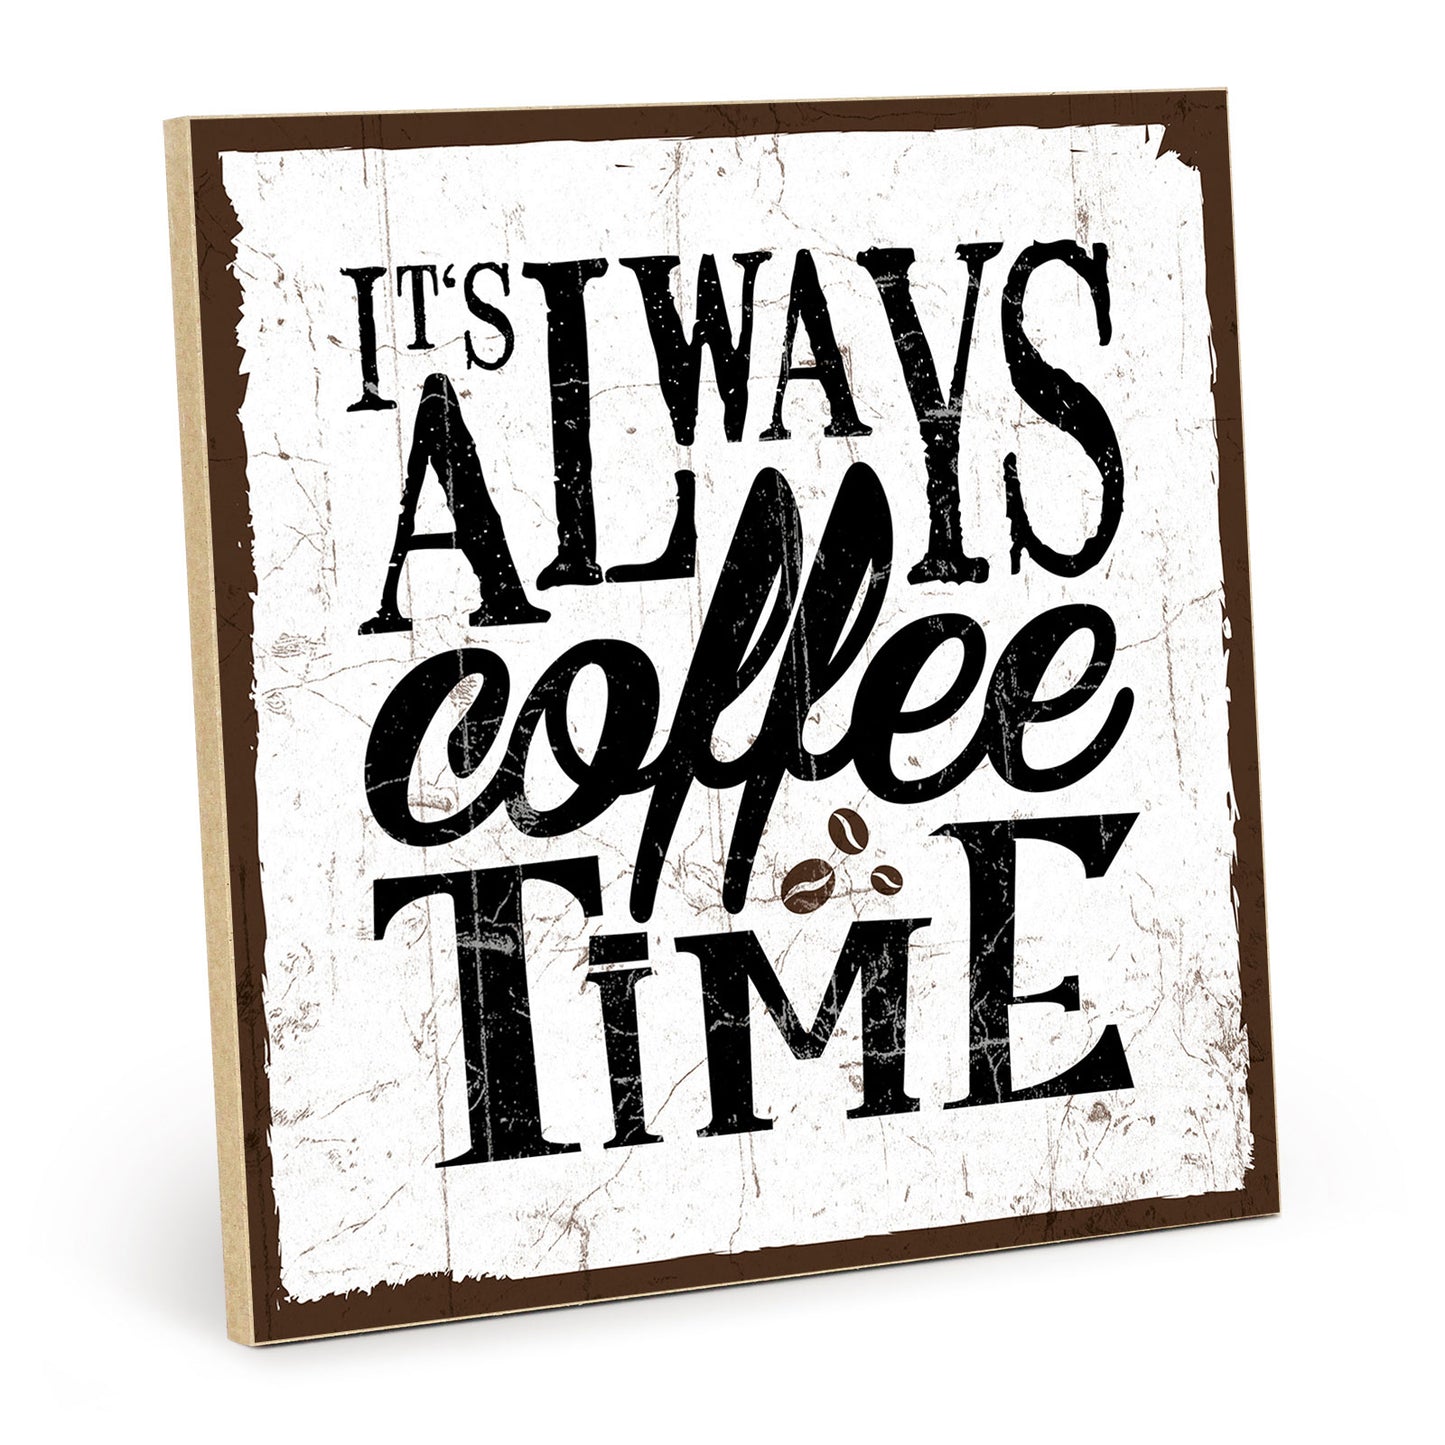 Holzschild mit Spruch - Kaffee - always coffee time – HS-QN-00086